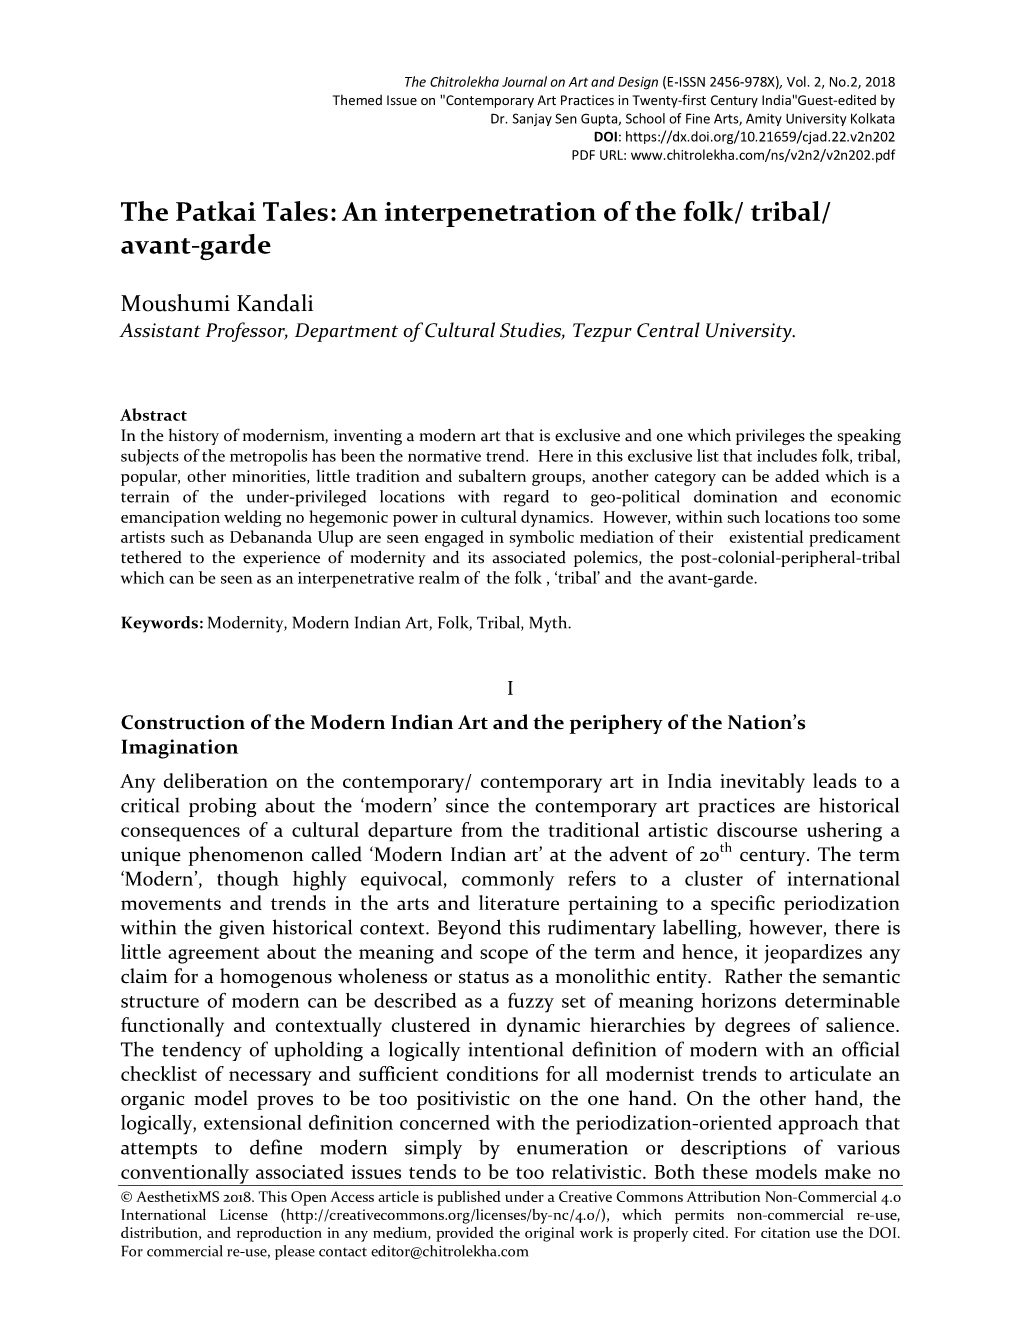 The Patkai Tales: an Interpenetration of the Folk/ Tribal/ Avant-Garde